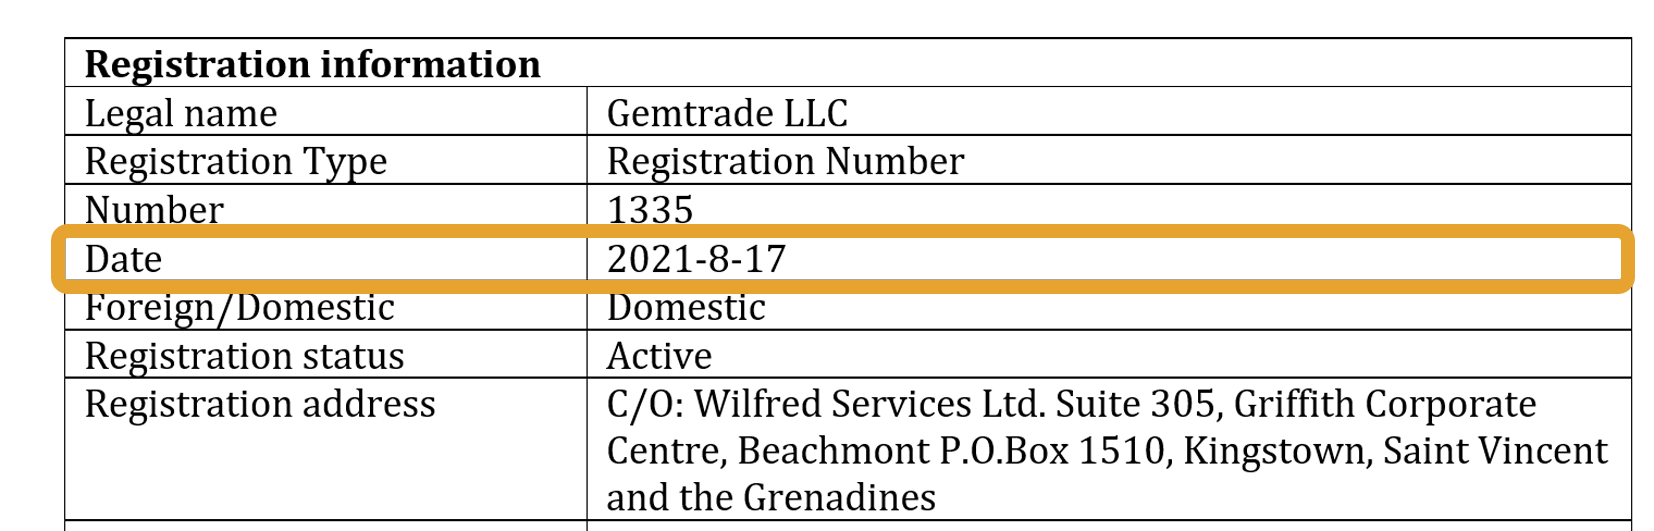 調査報告書によると、Gemtrade LLC の登記日は2021年8月17日で、登記番号は1335です。